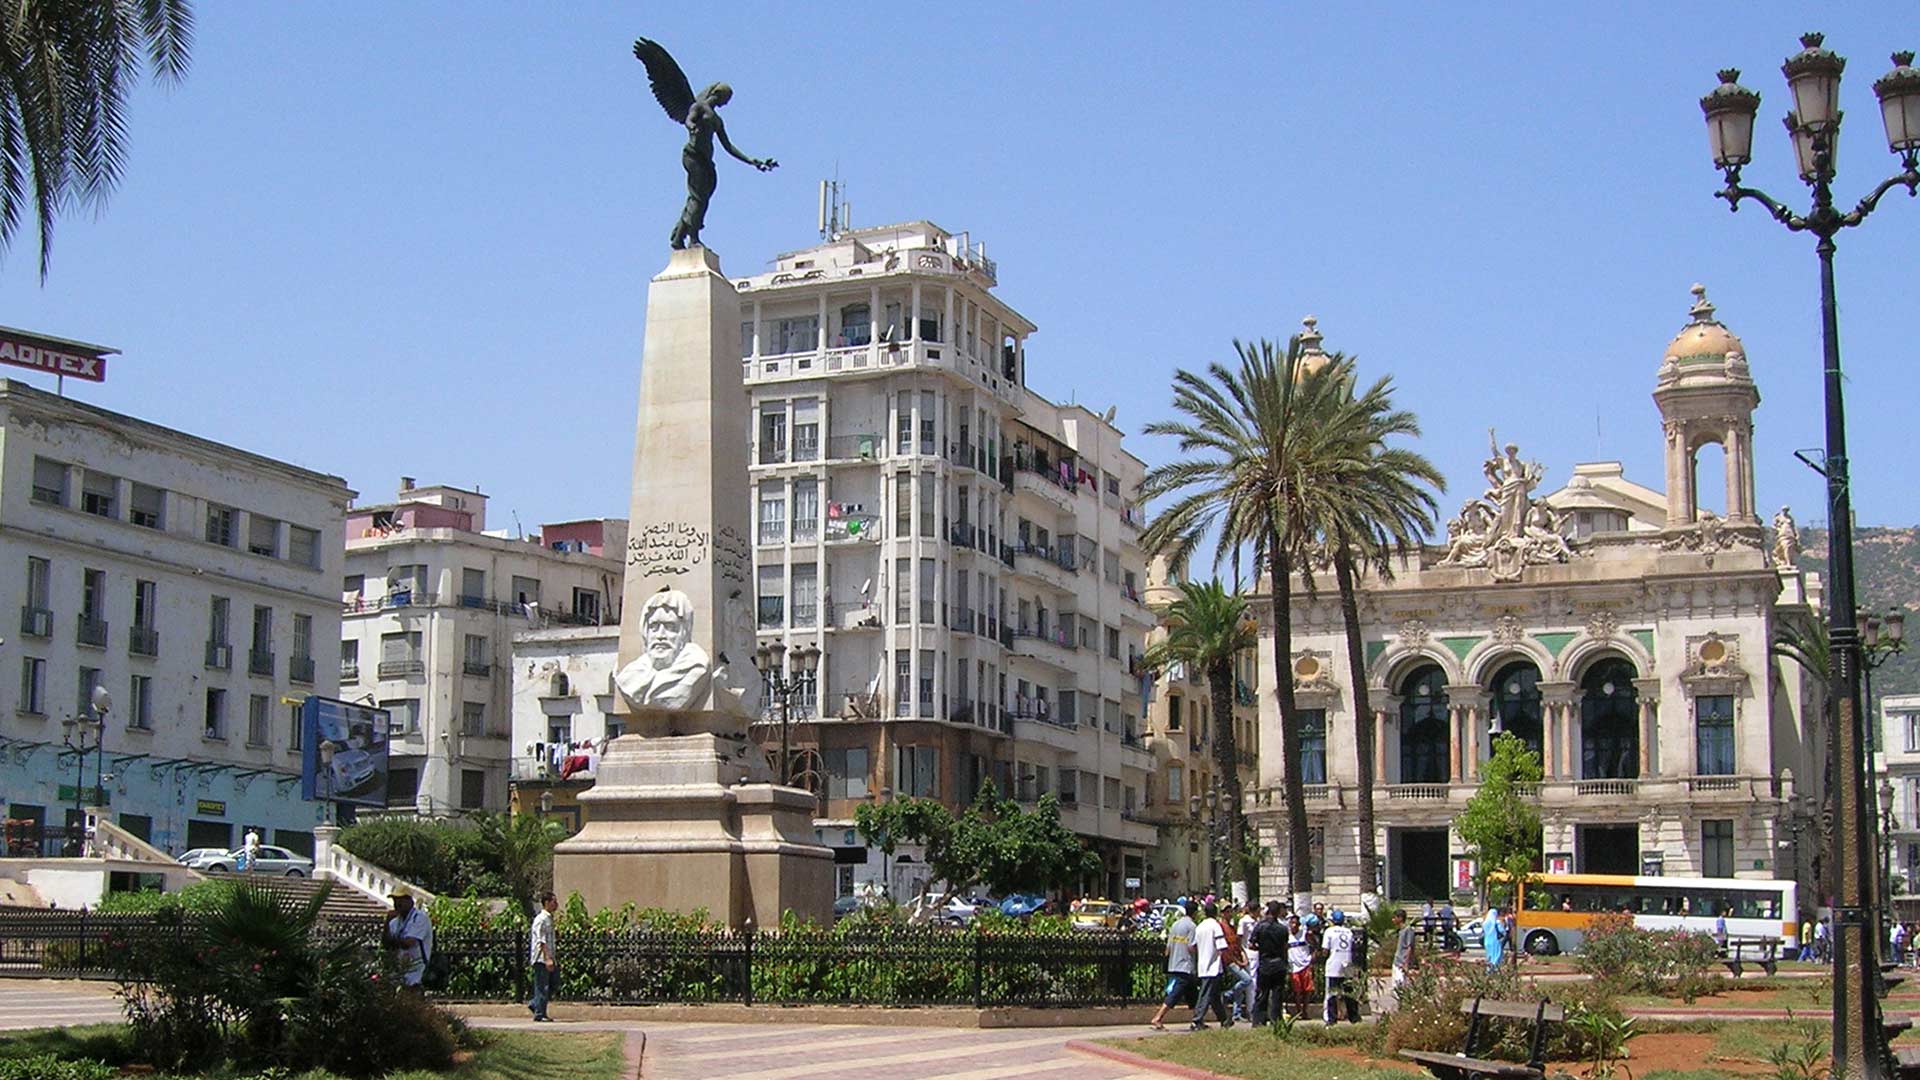 The Sidi-Brahim Monument